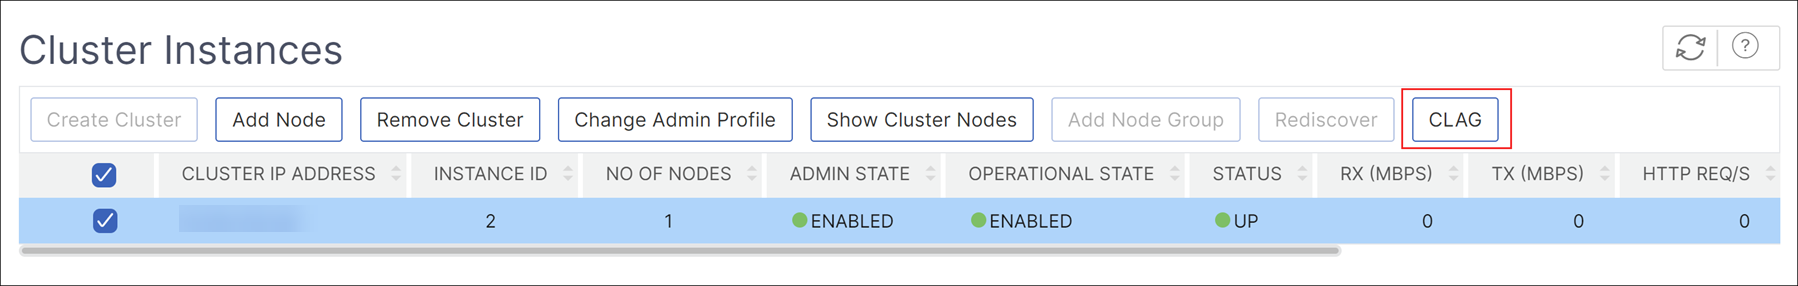 Modification d'une instance de cluster